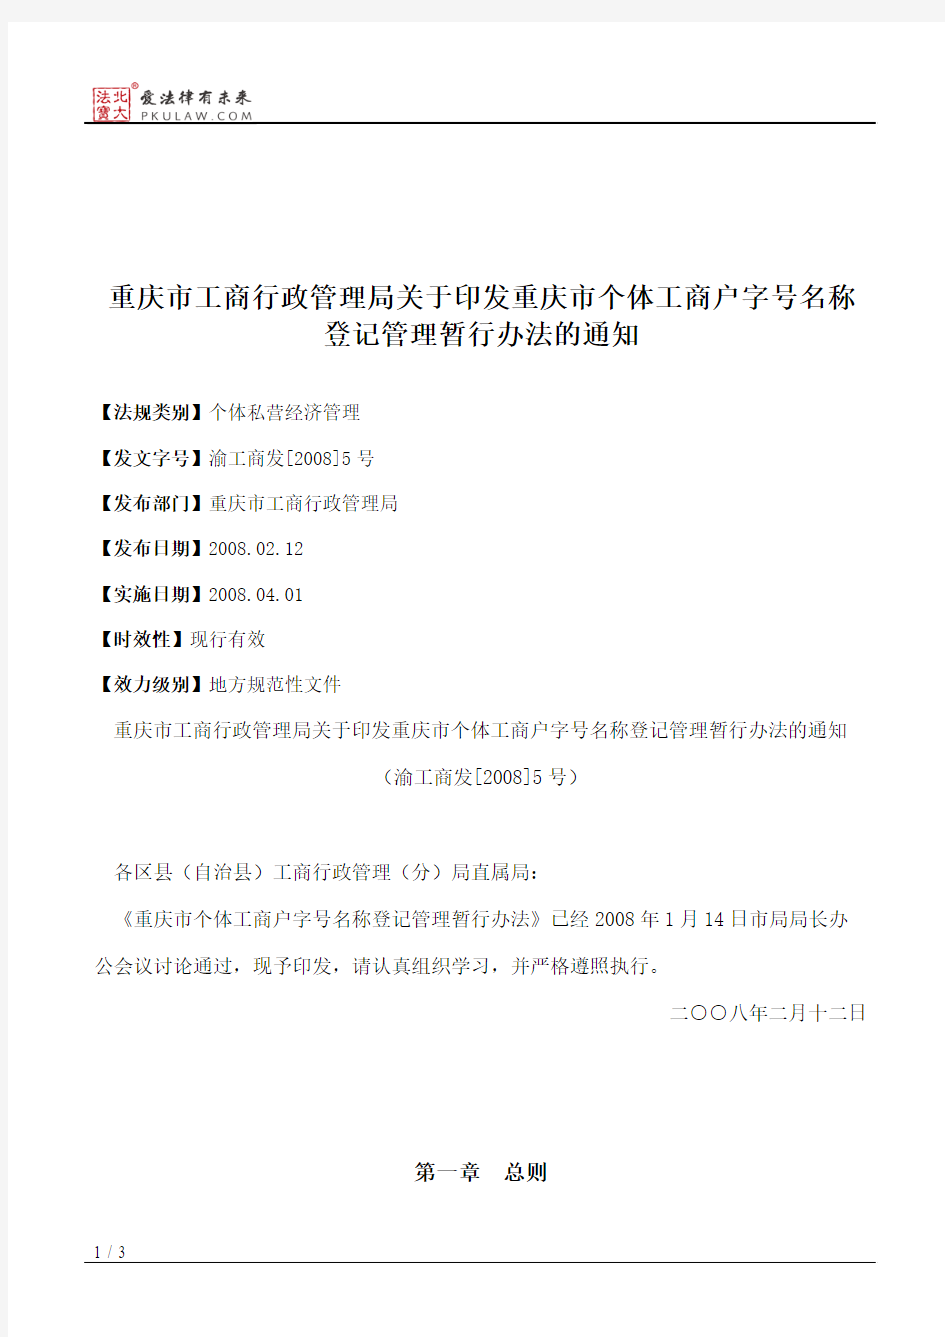 重庆市工商行政管理局关于印发重庆市个体工商户字号名称登记管理